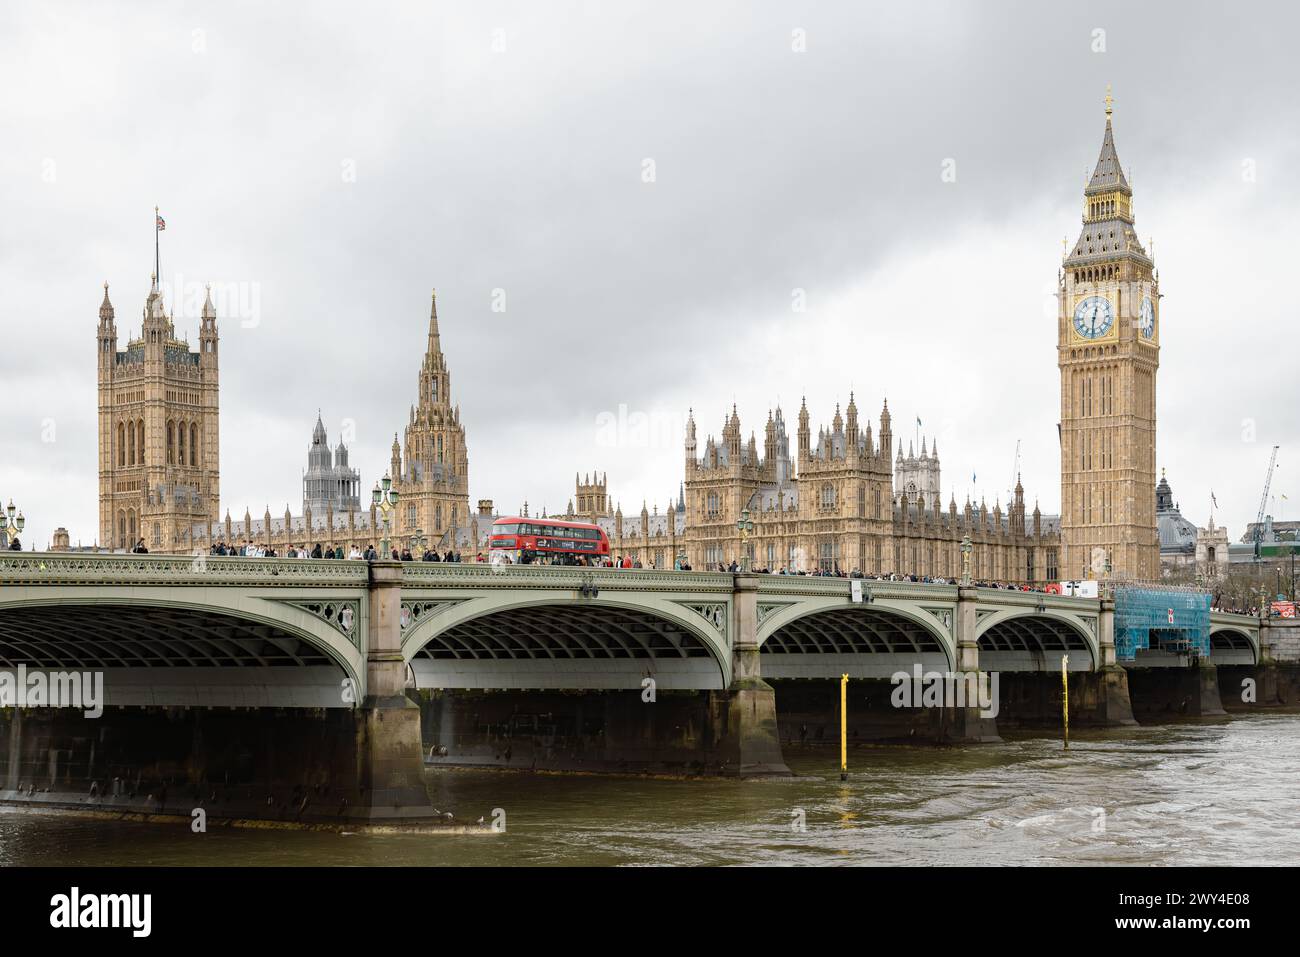 Un autobus rosso di Londra che attraversa il ponte di Westminster. Dietro di esso il Big Ben e le Houses of Parliament, un simbolo iconico della democrazia e del patrimonio britannico. Foto Stock